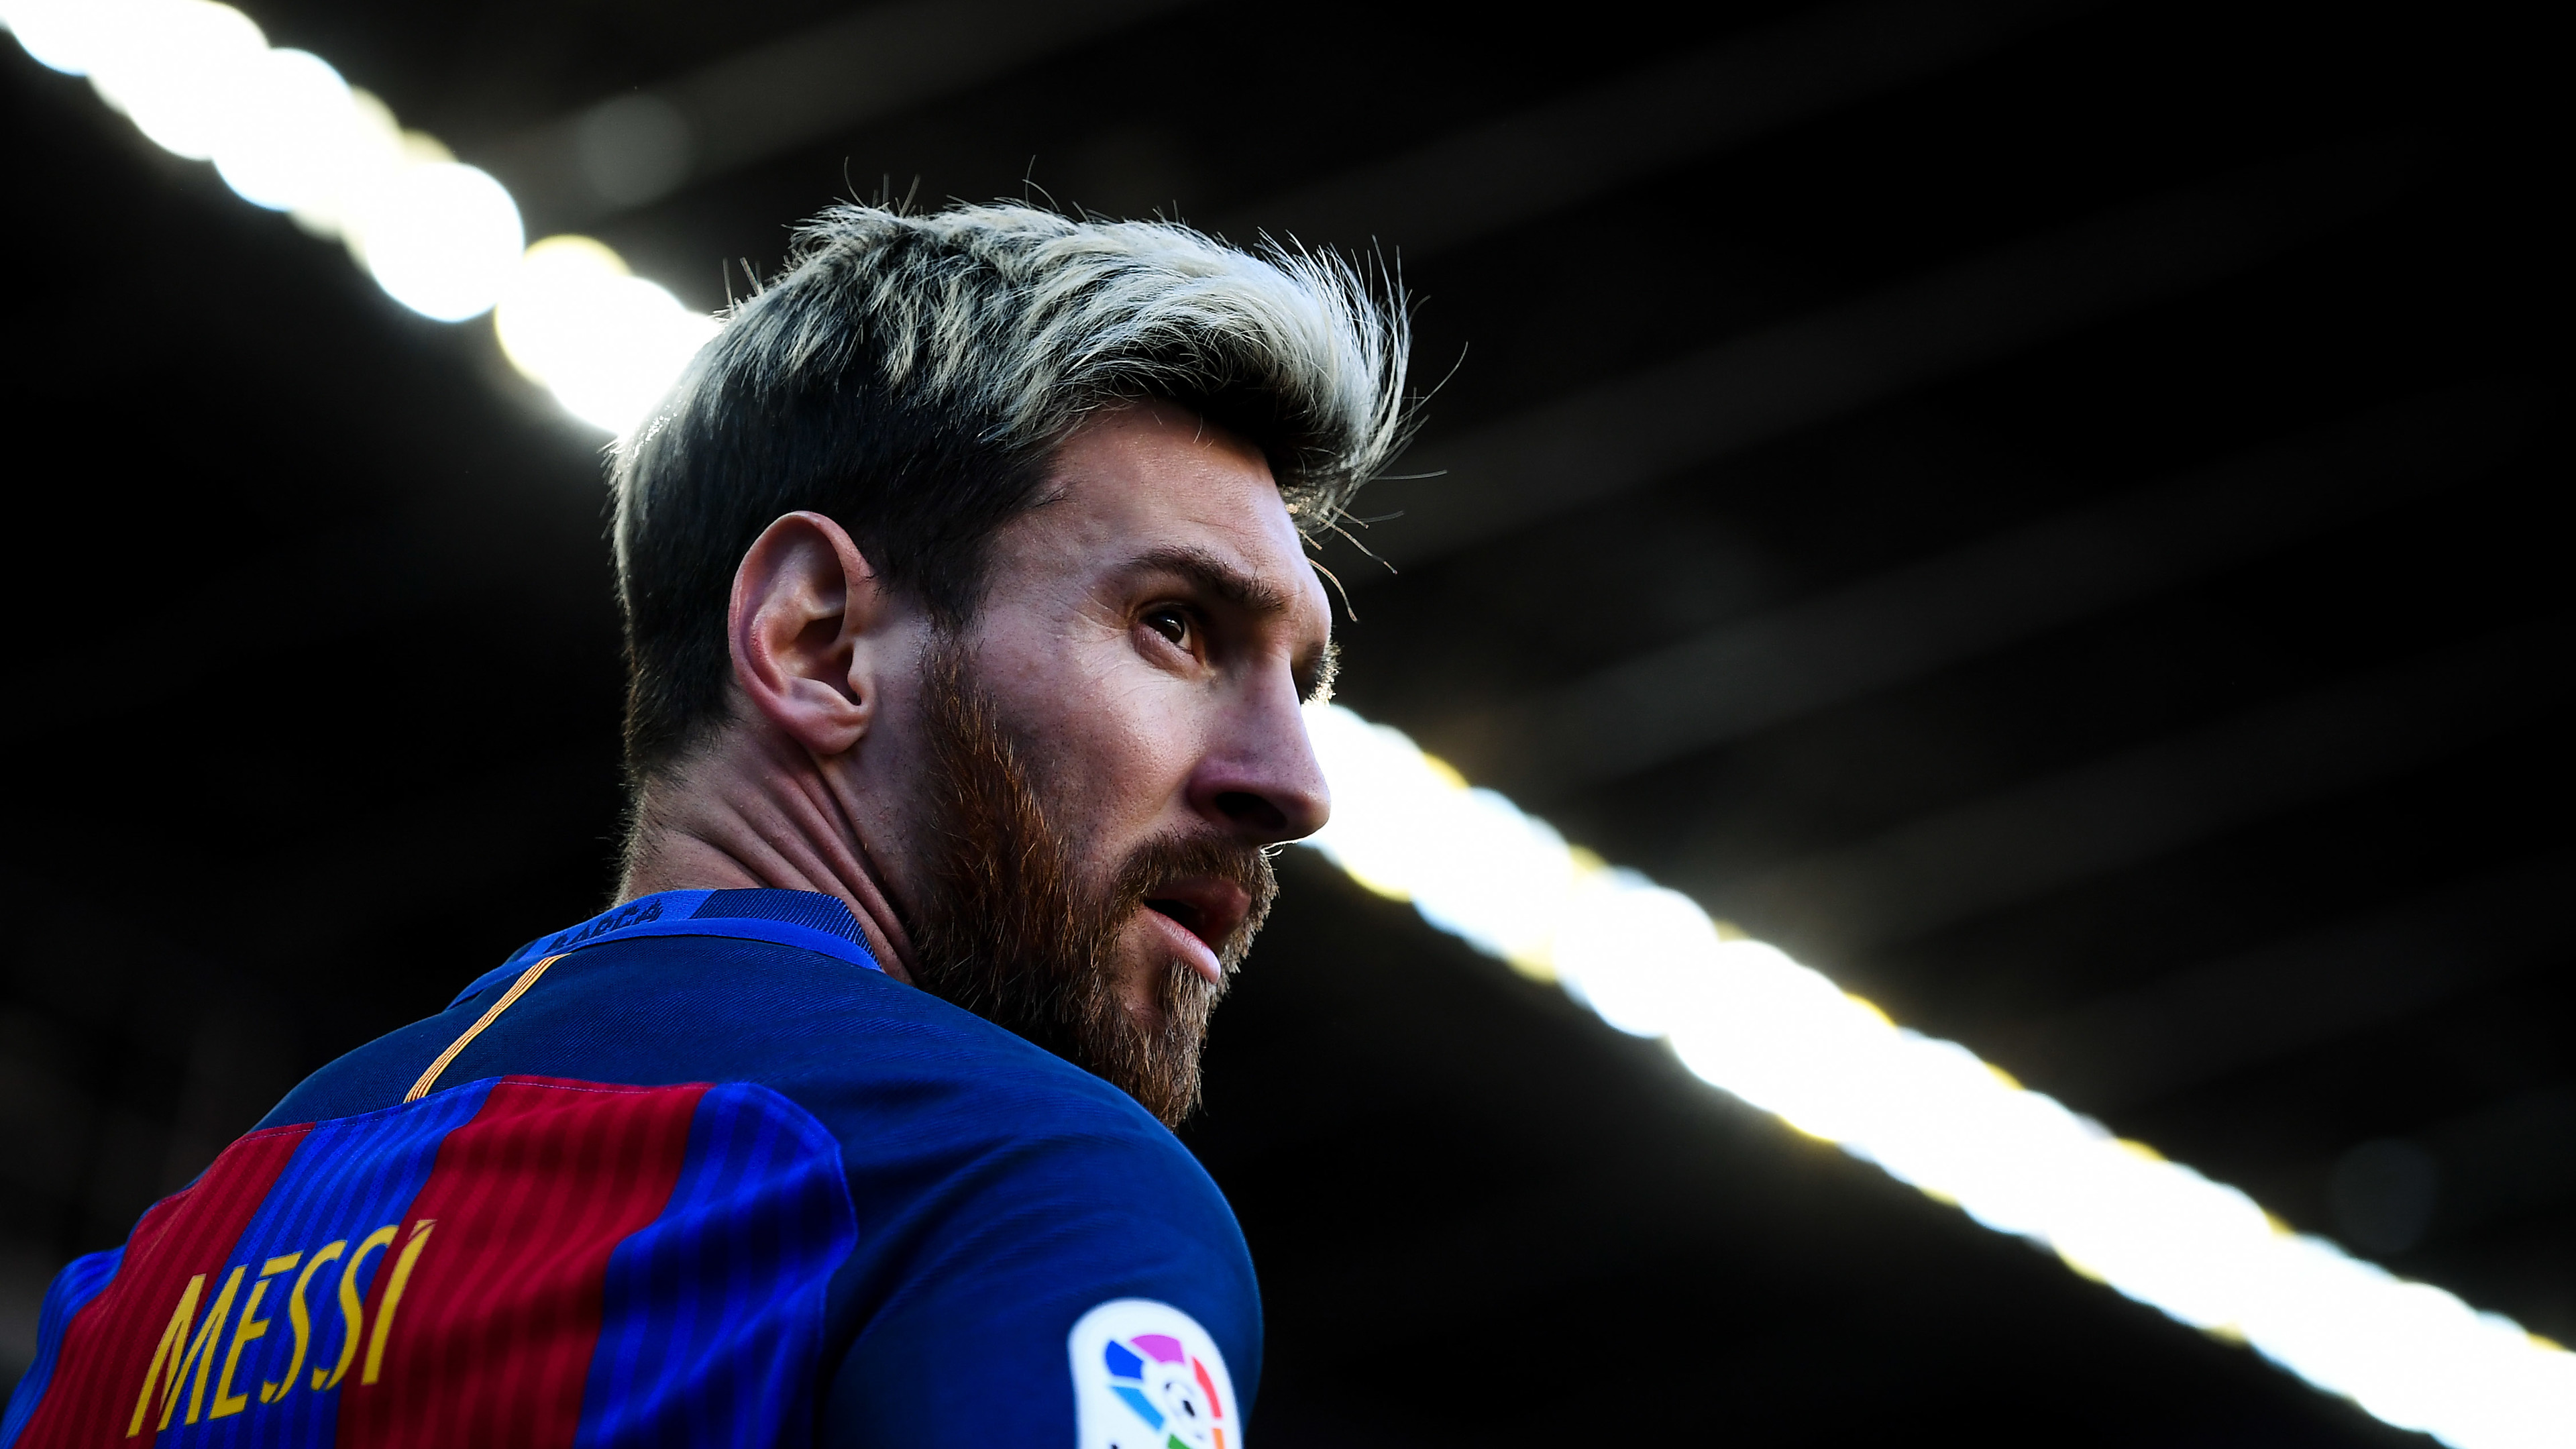 Hình nền Messi 4K 2018 sẽ khiến cho màn hình của bạn chuyển biến thành một bức tranh sống động về người hùng bóng đá đẳng cấp thế giới. Đừng bỏ lỡ cơ hội trải nghiệm tuyệt vời này!